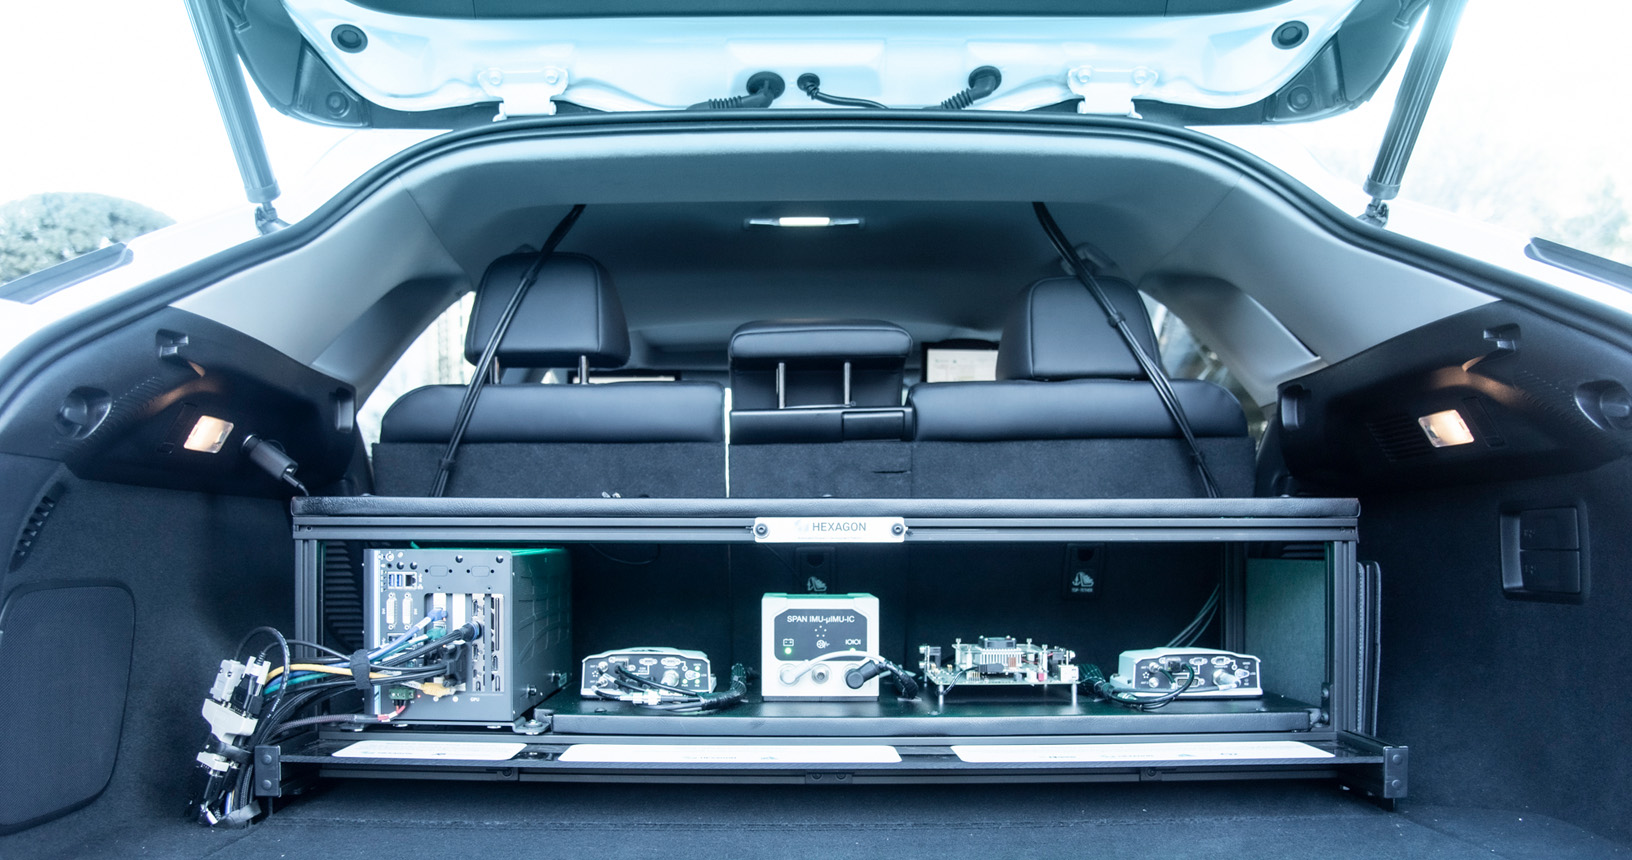 Bagagliaio aperto di un'auto Lexus che mostra vari hardware che consentono il funzionamento autonomo.